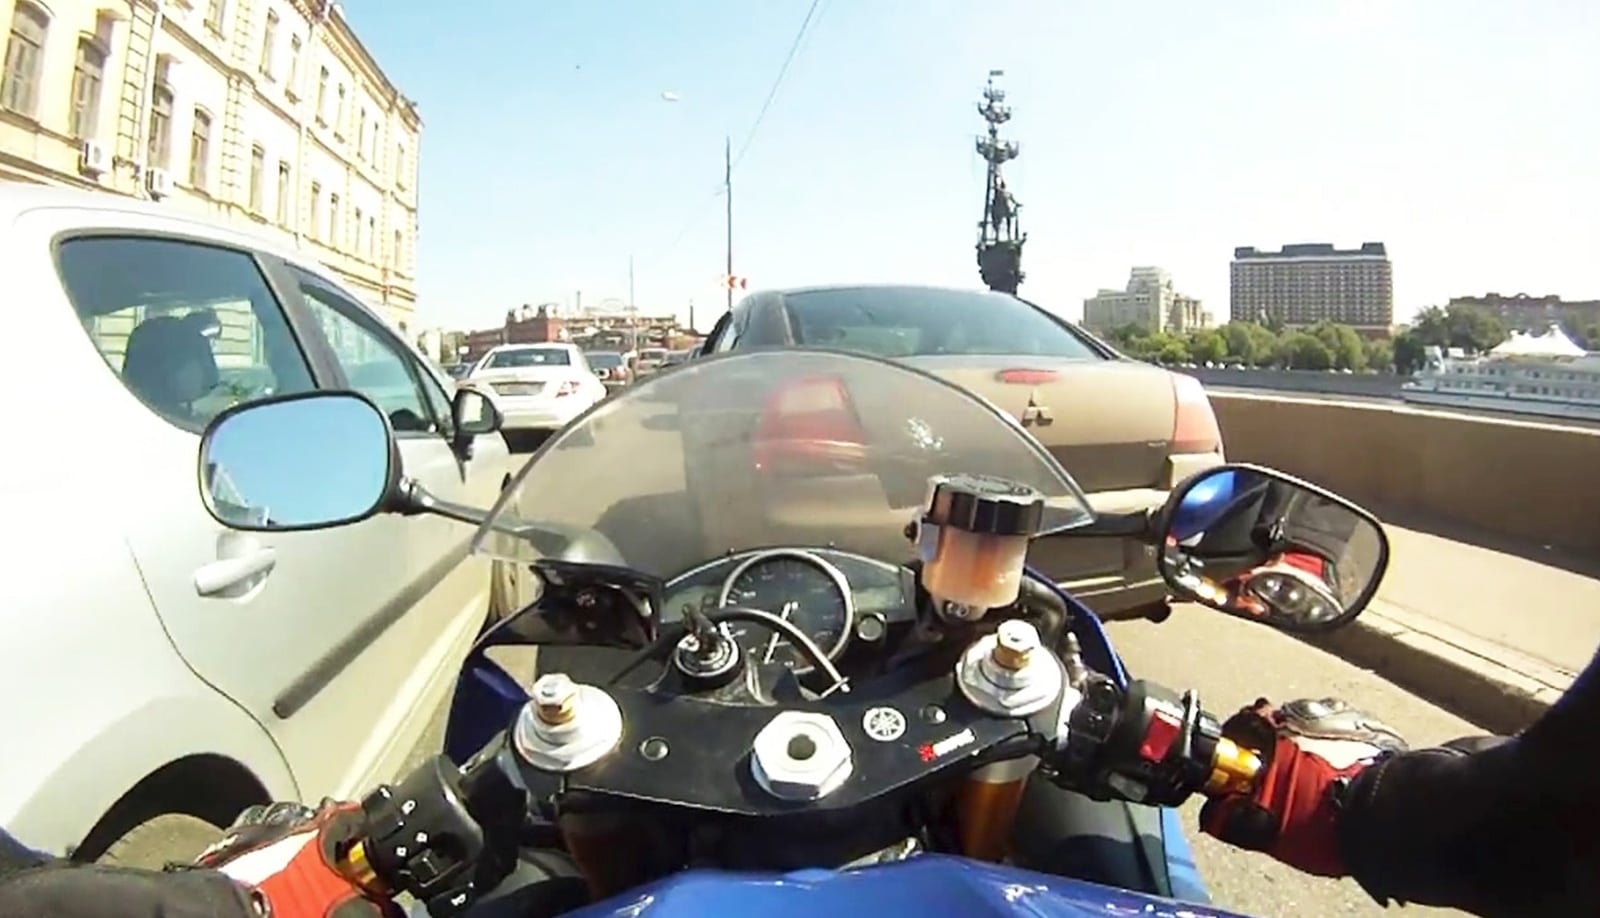 Езда на мотоцикле в городе. Искусство медленной езды в траффике